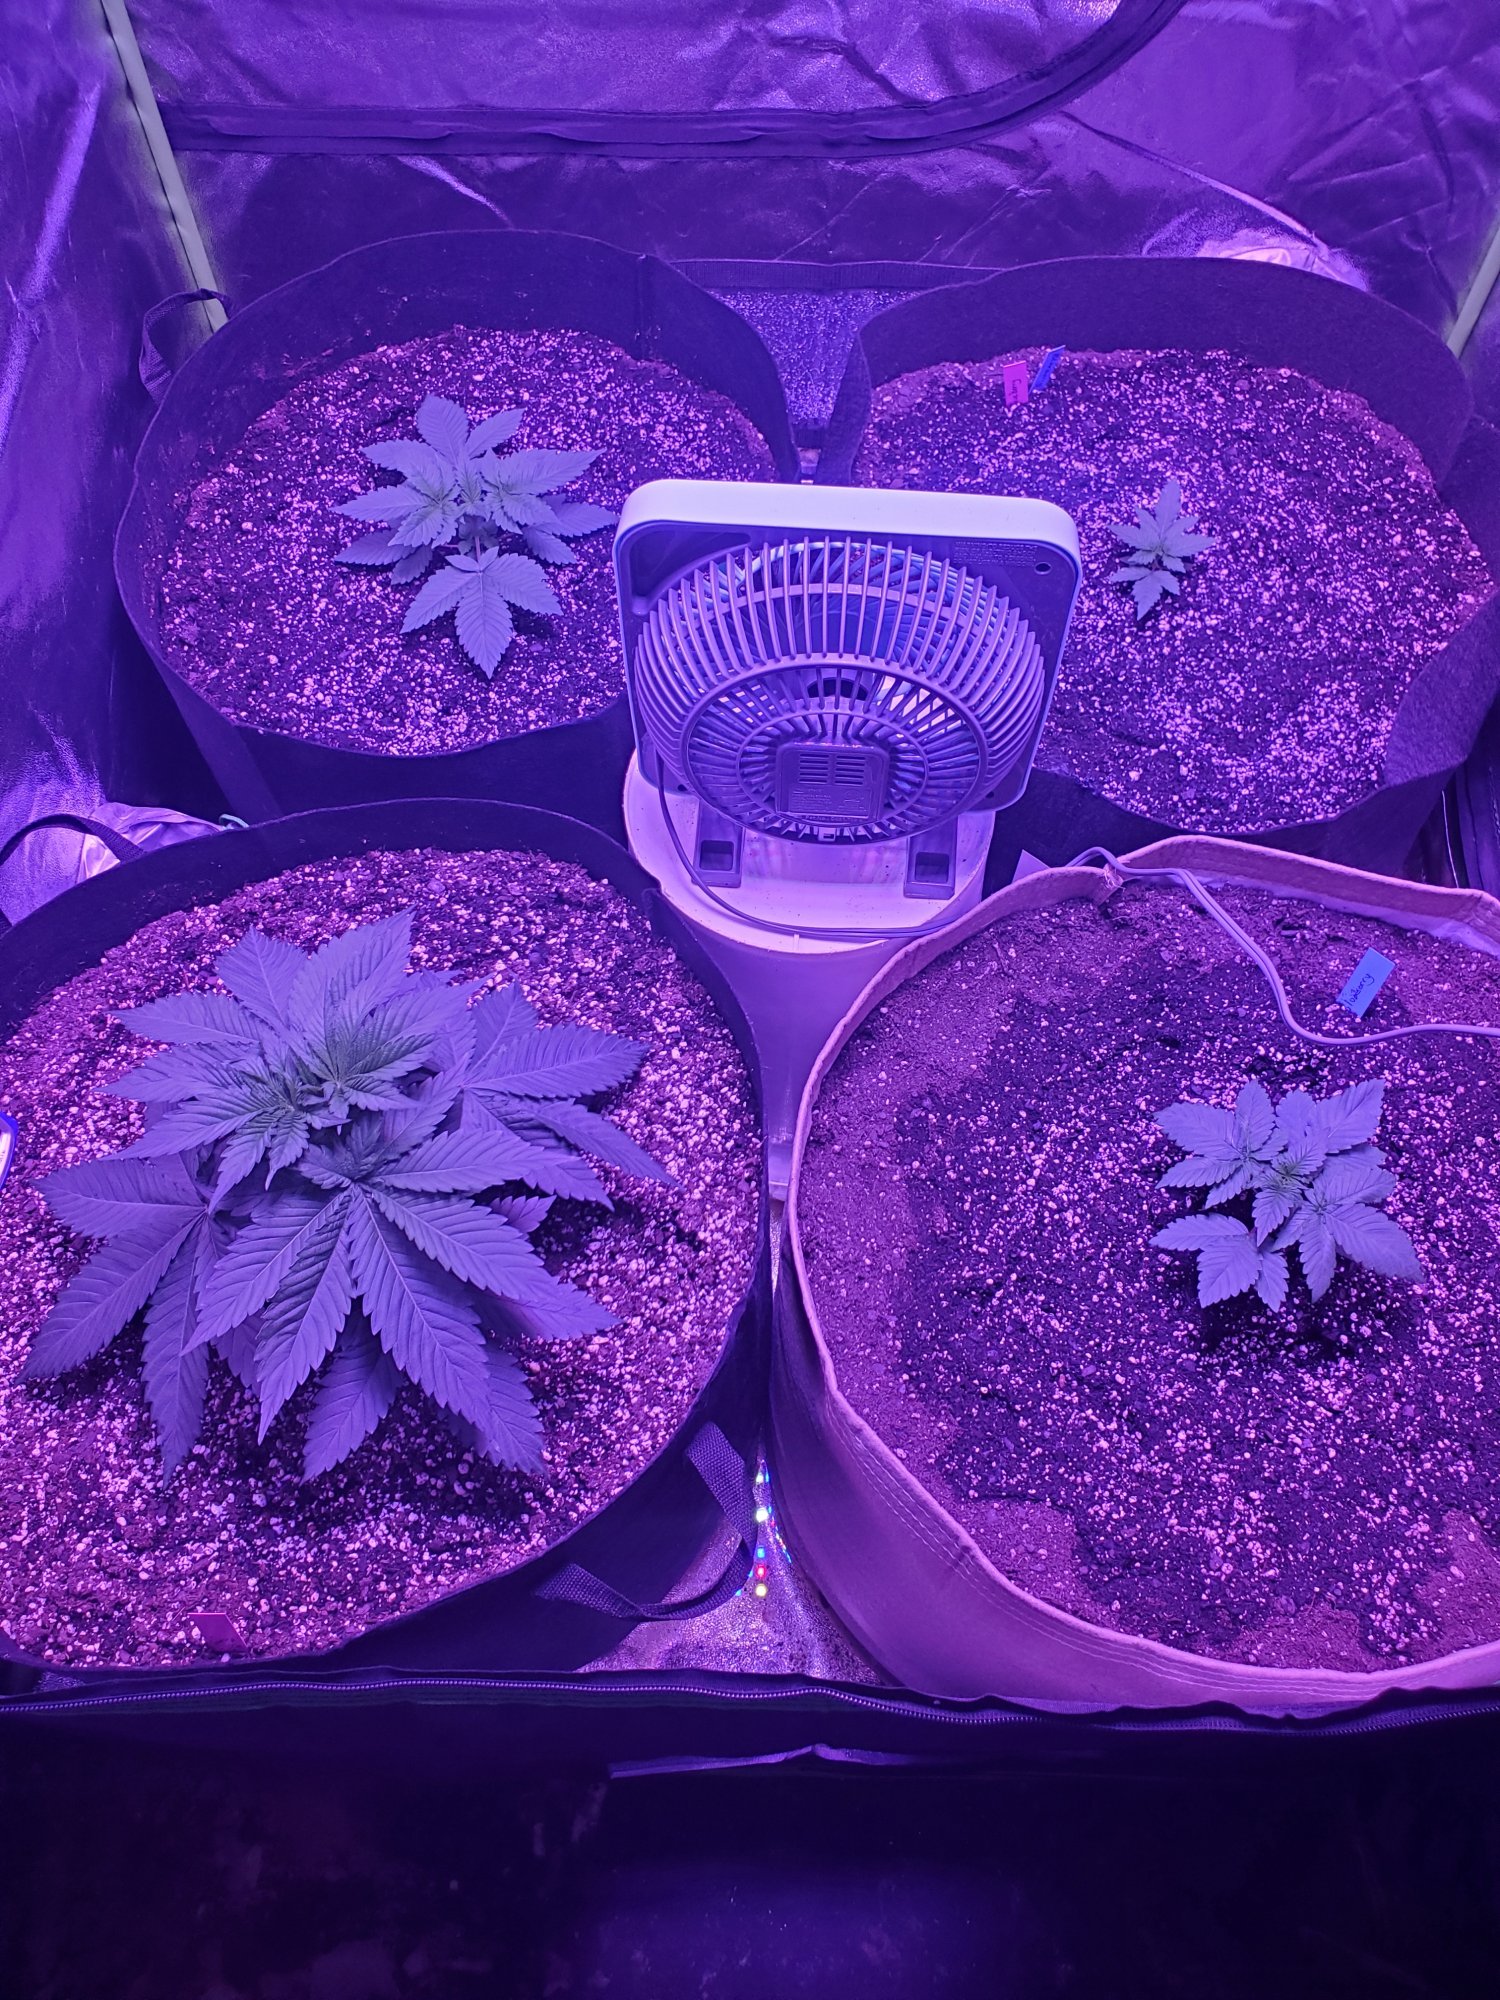 First indoor grow 4